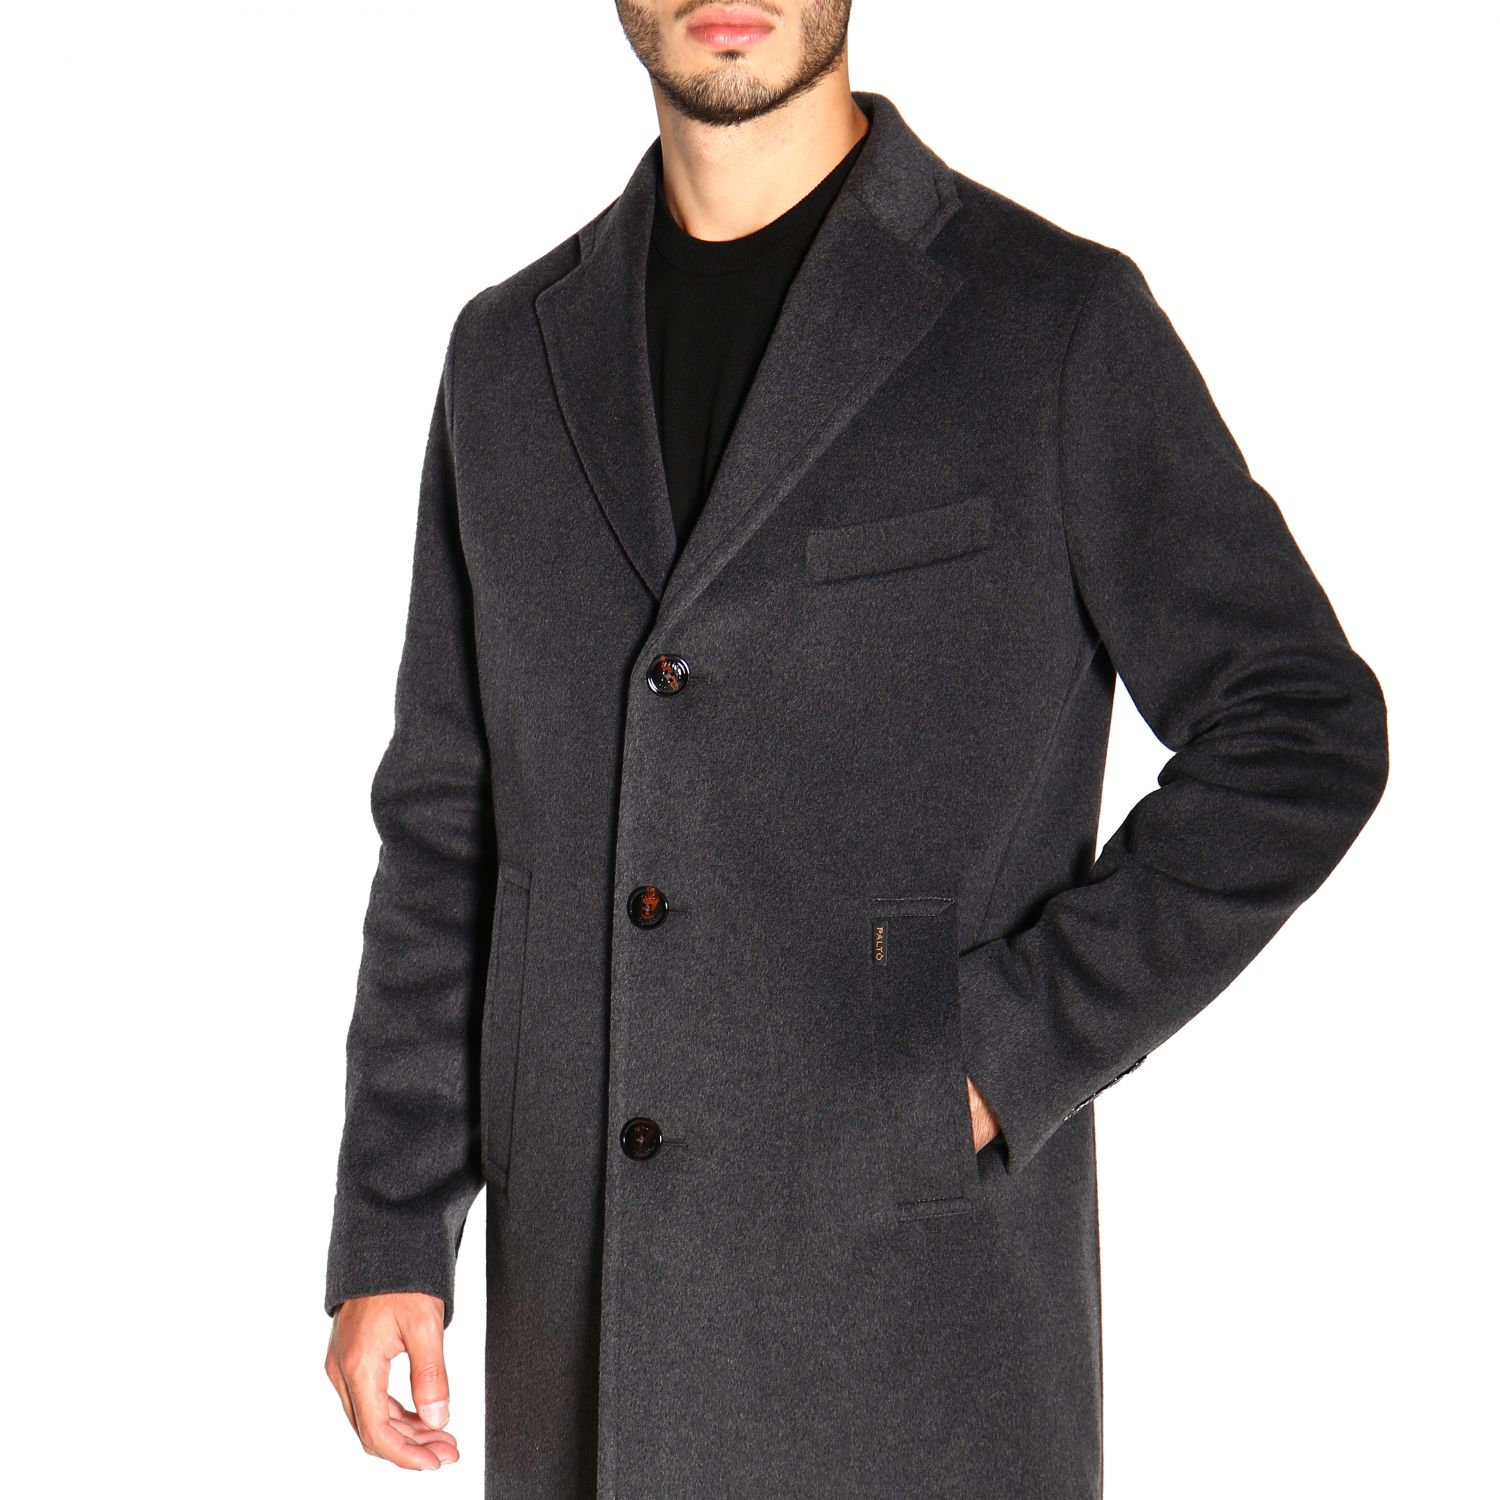 Низкое мужское пальто. Пальто мужское Озон. Gino Pellini пальто мужское демисезонное. Итальянское пальто мужское. Классическое пальто мужское.